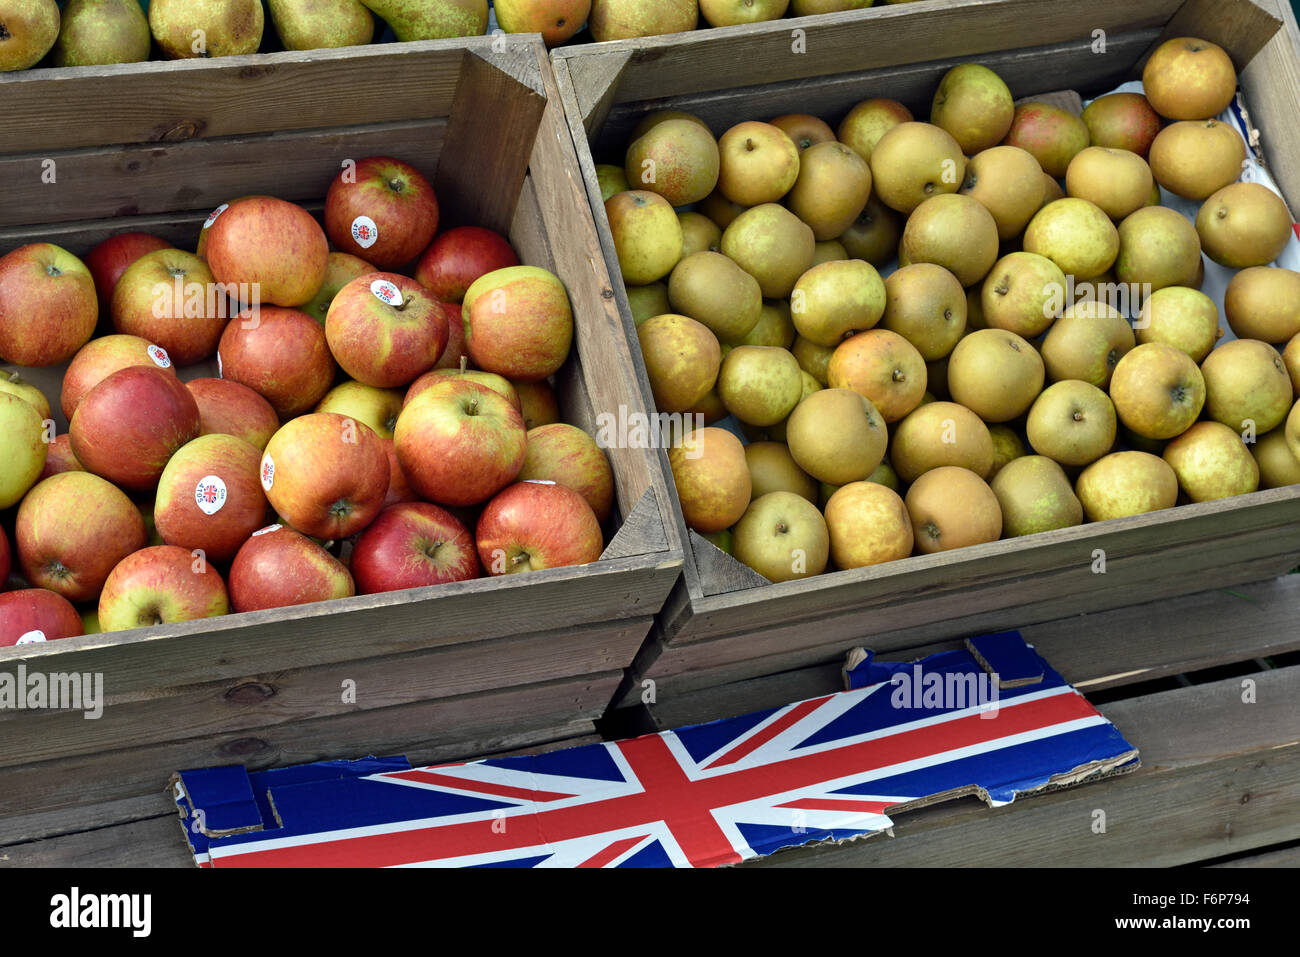 English Apples Cox e deserto Russet mele in scatole di legno con union jack flag o, Fulham Palace giorno apple Foto Stock